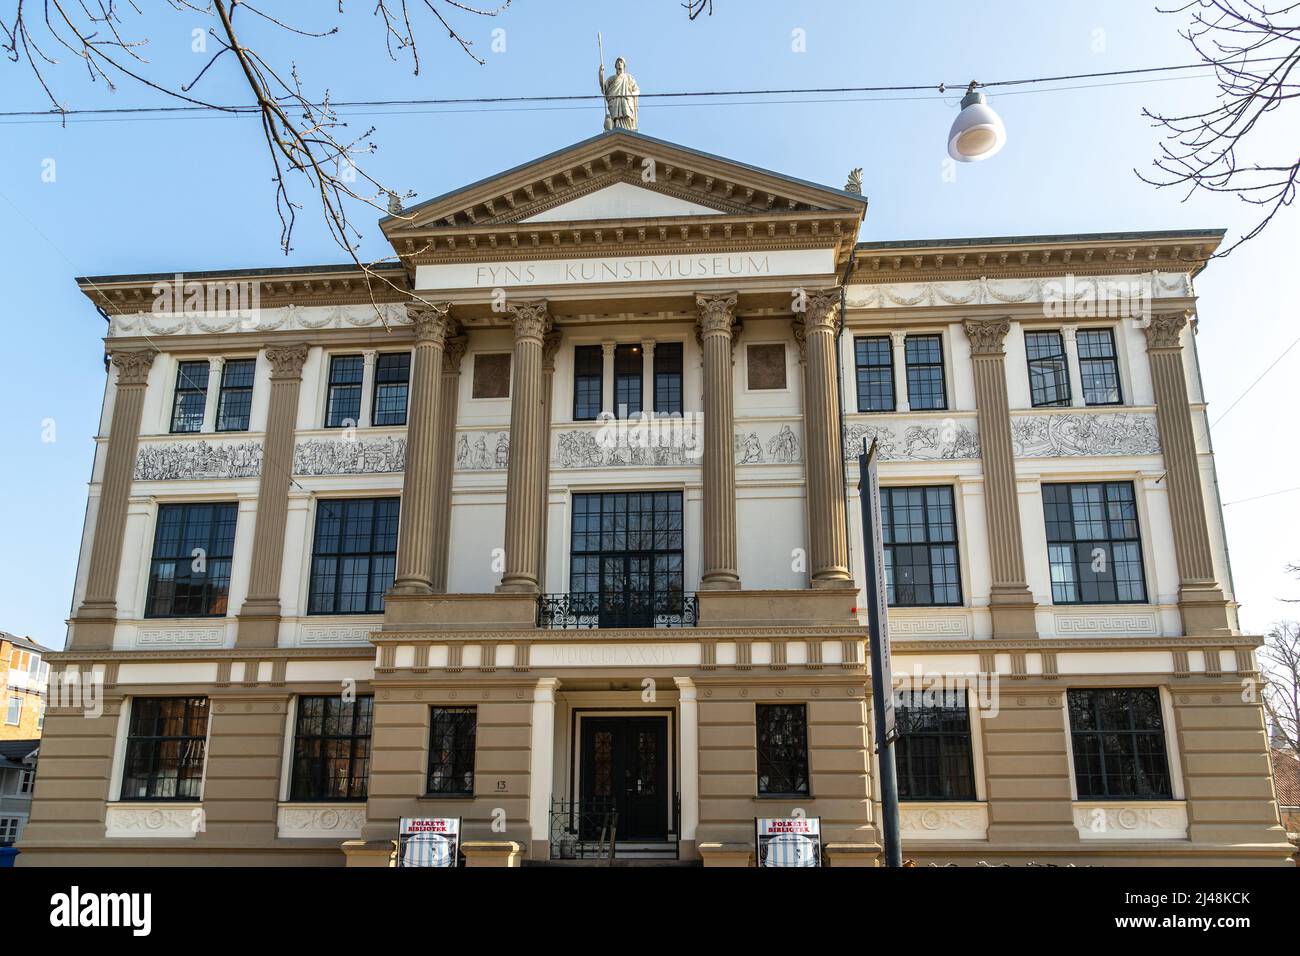 Die neoklassizistische Fassade der 'Fünen Art Academy', einer unabhängigen Bildungseinrichtung zeitgenössischer bildender Künste. Odense, Fyn, Dänemark, Europa Stockfoto